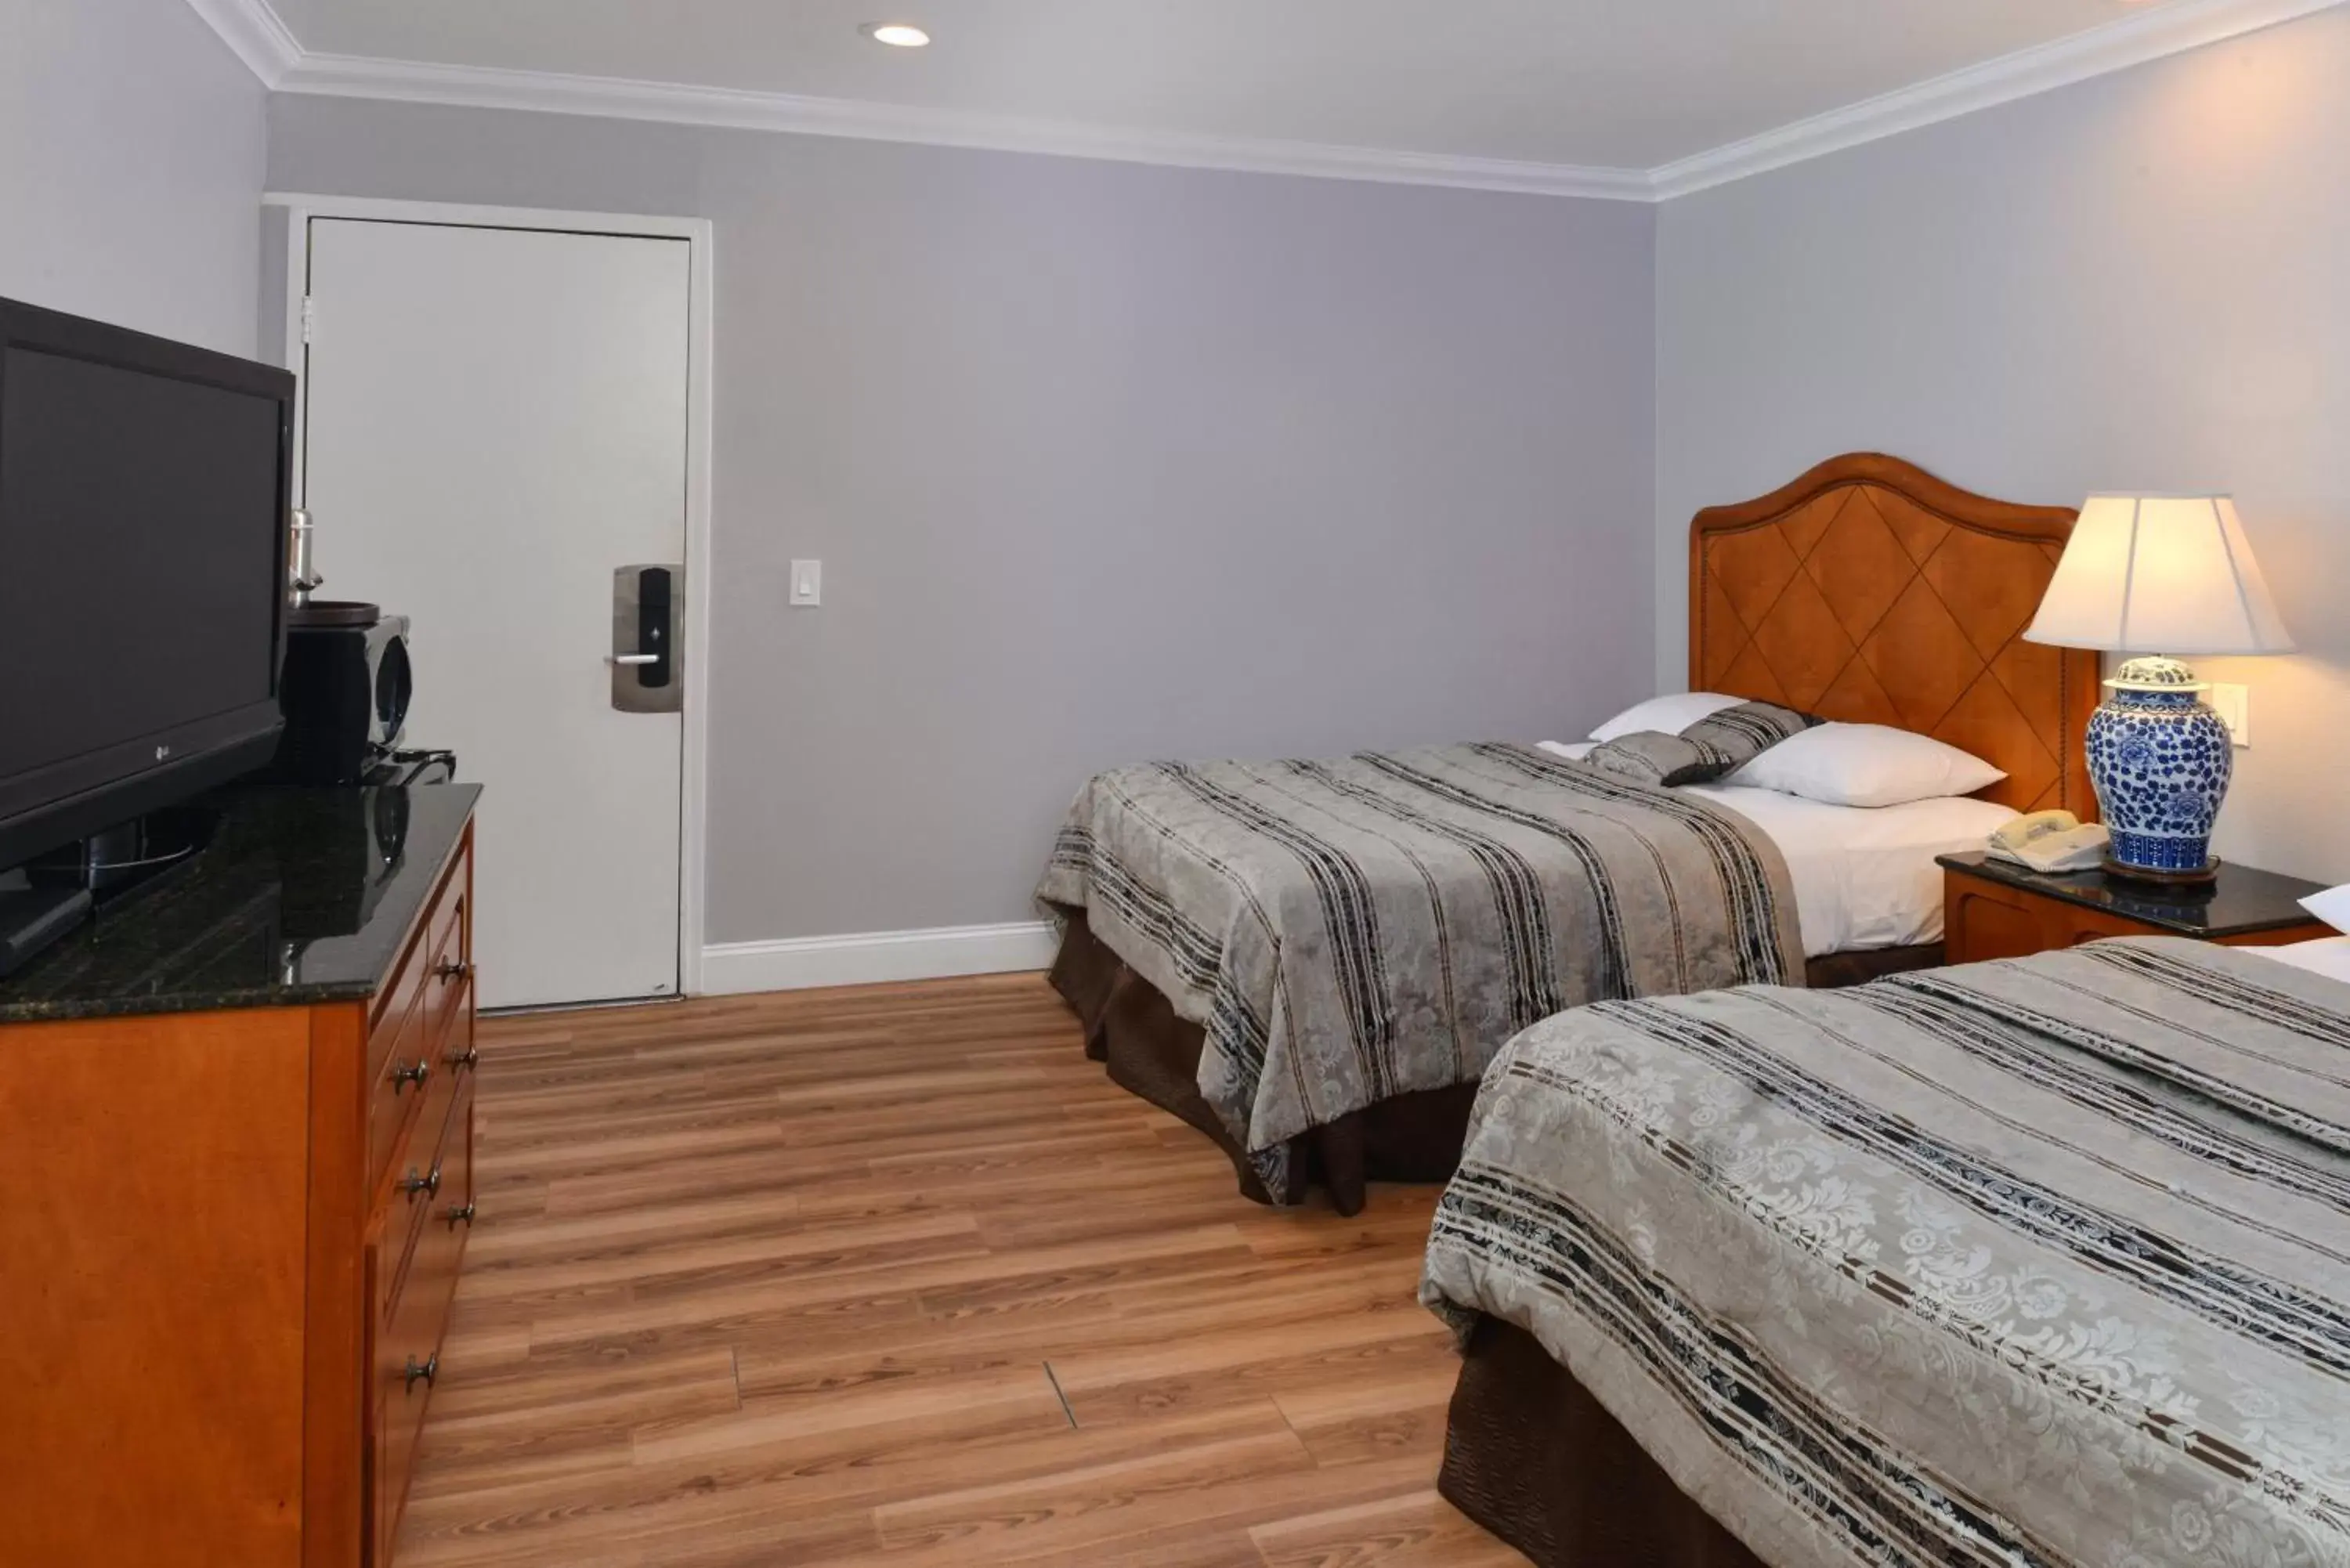 Bedroom, Room Photo in Highlander Motel